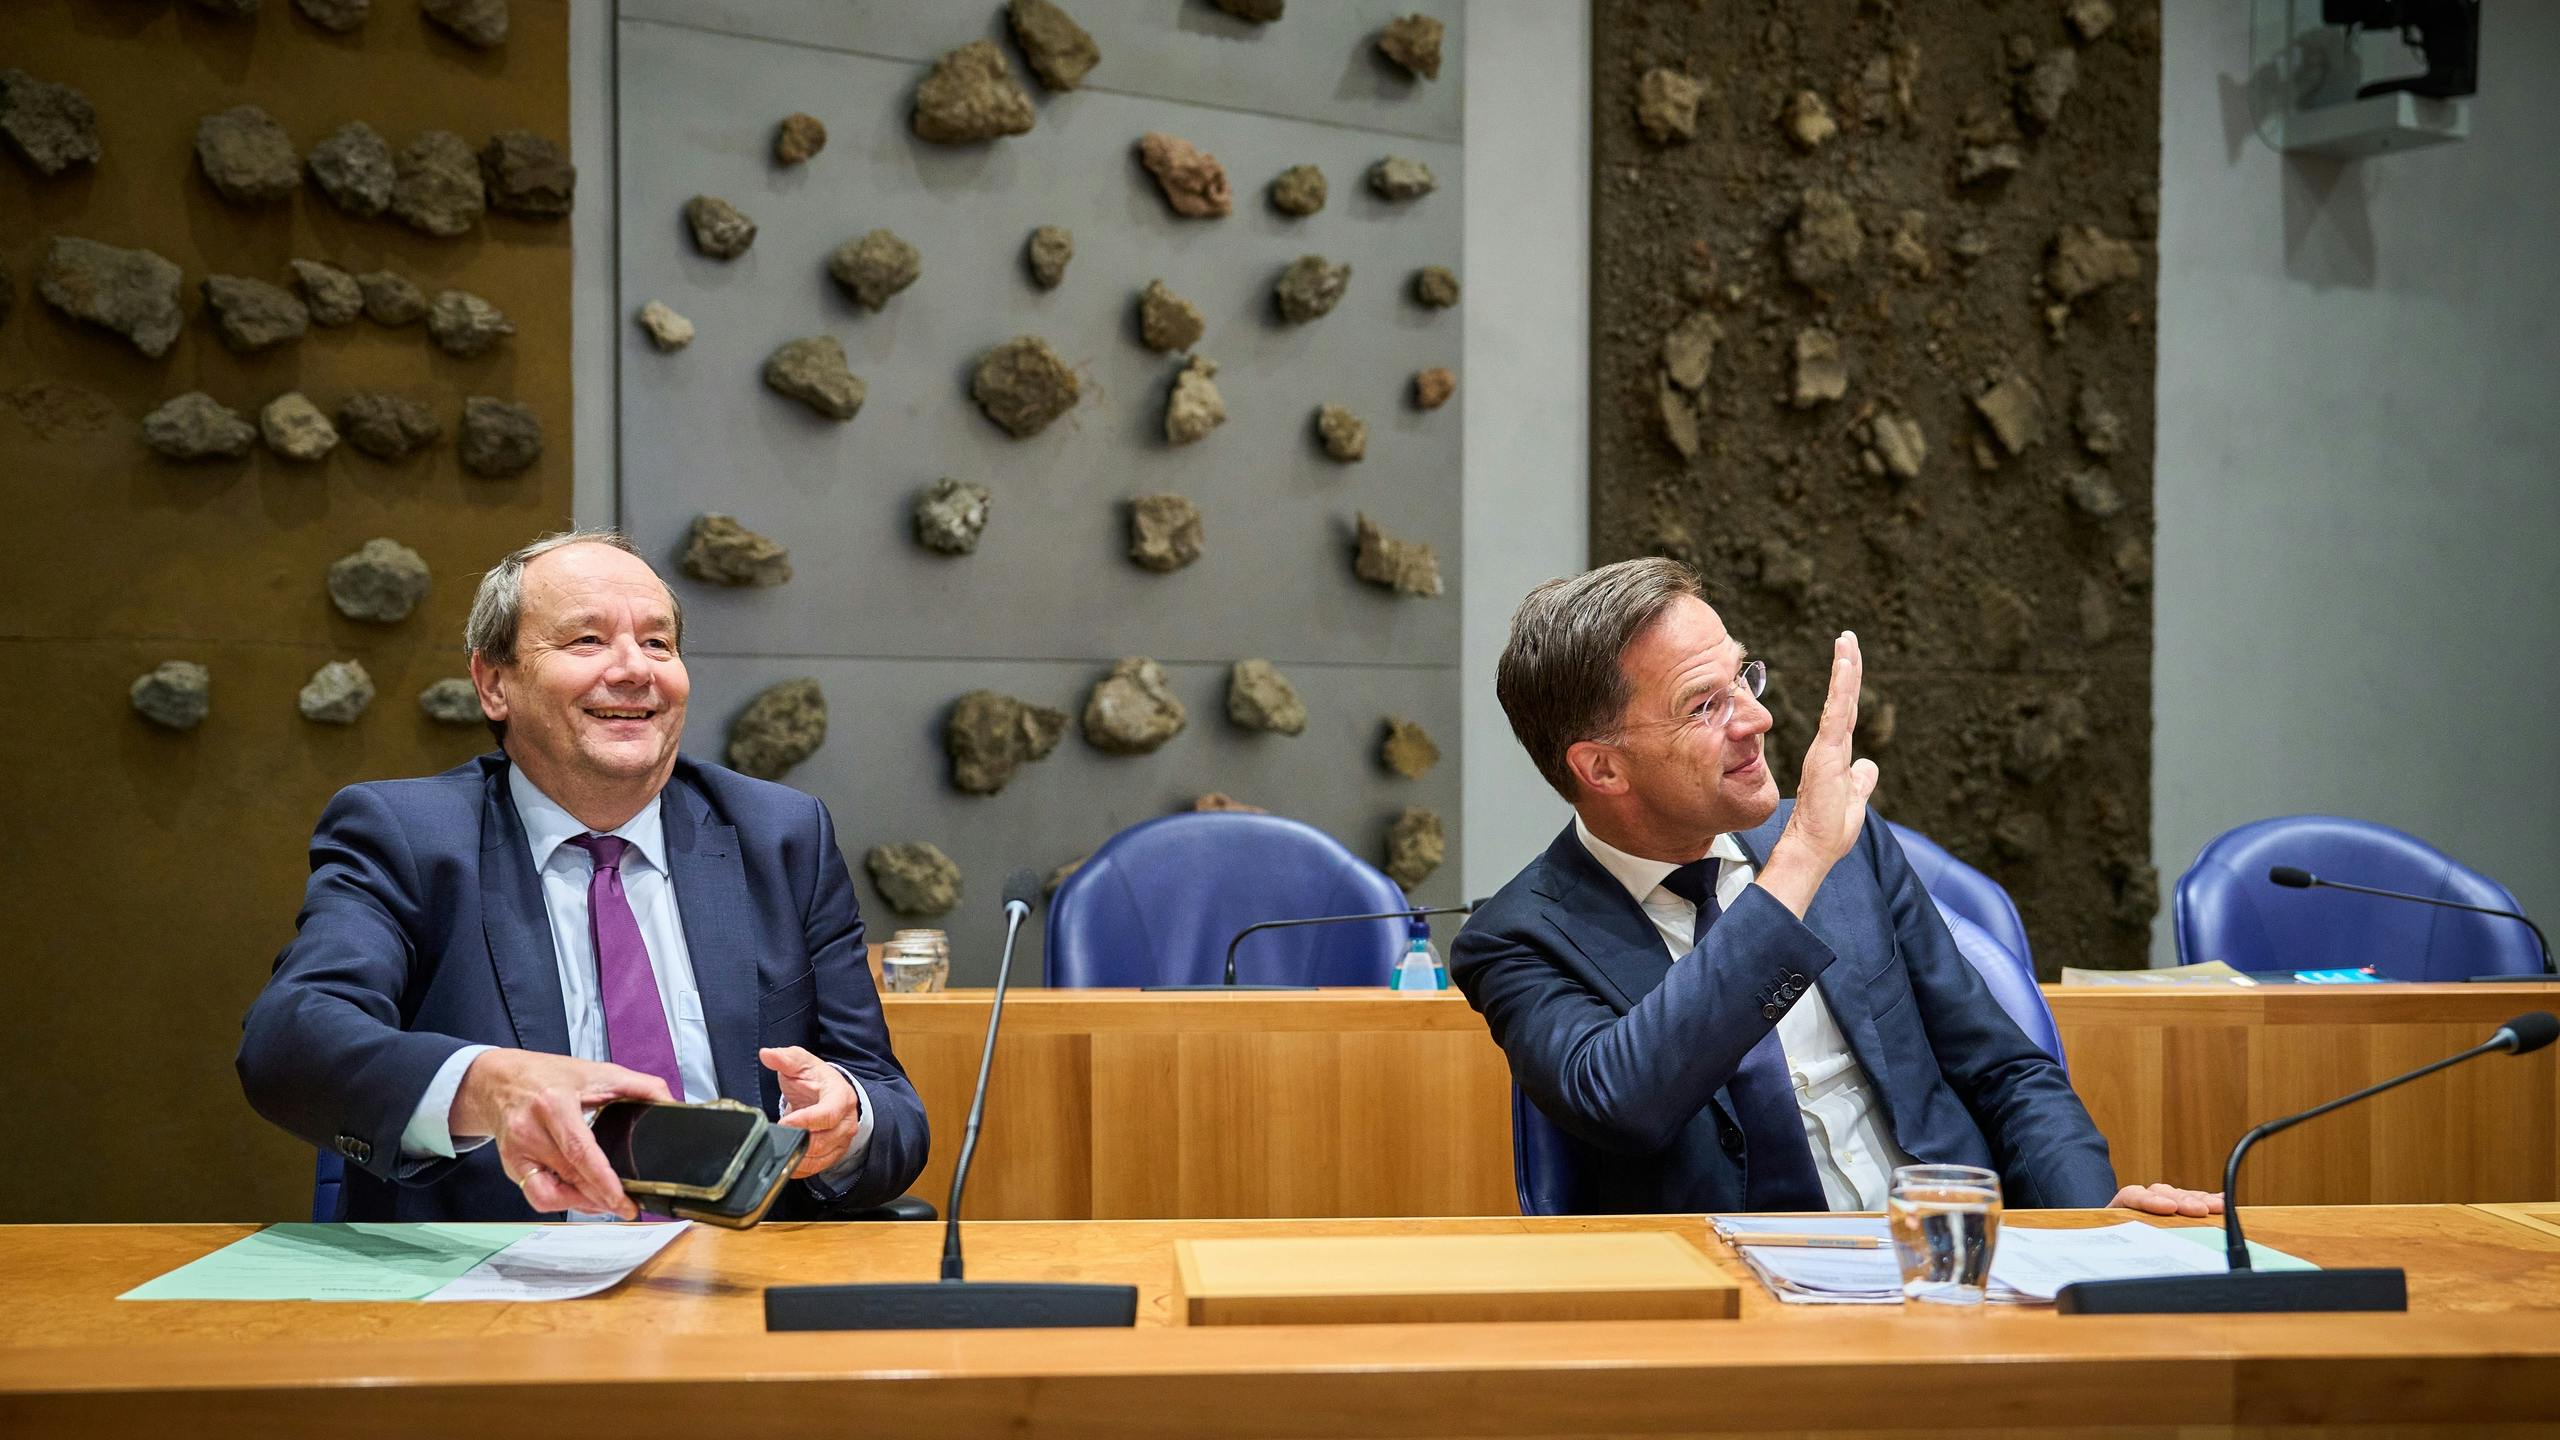 Oppositie debatteert zonder vertrouwen in Rutte over gaswinning Groningen